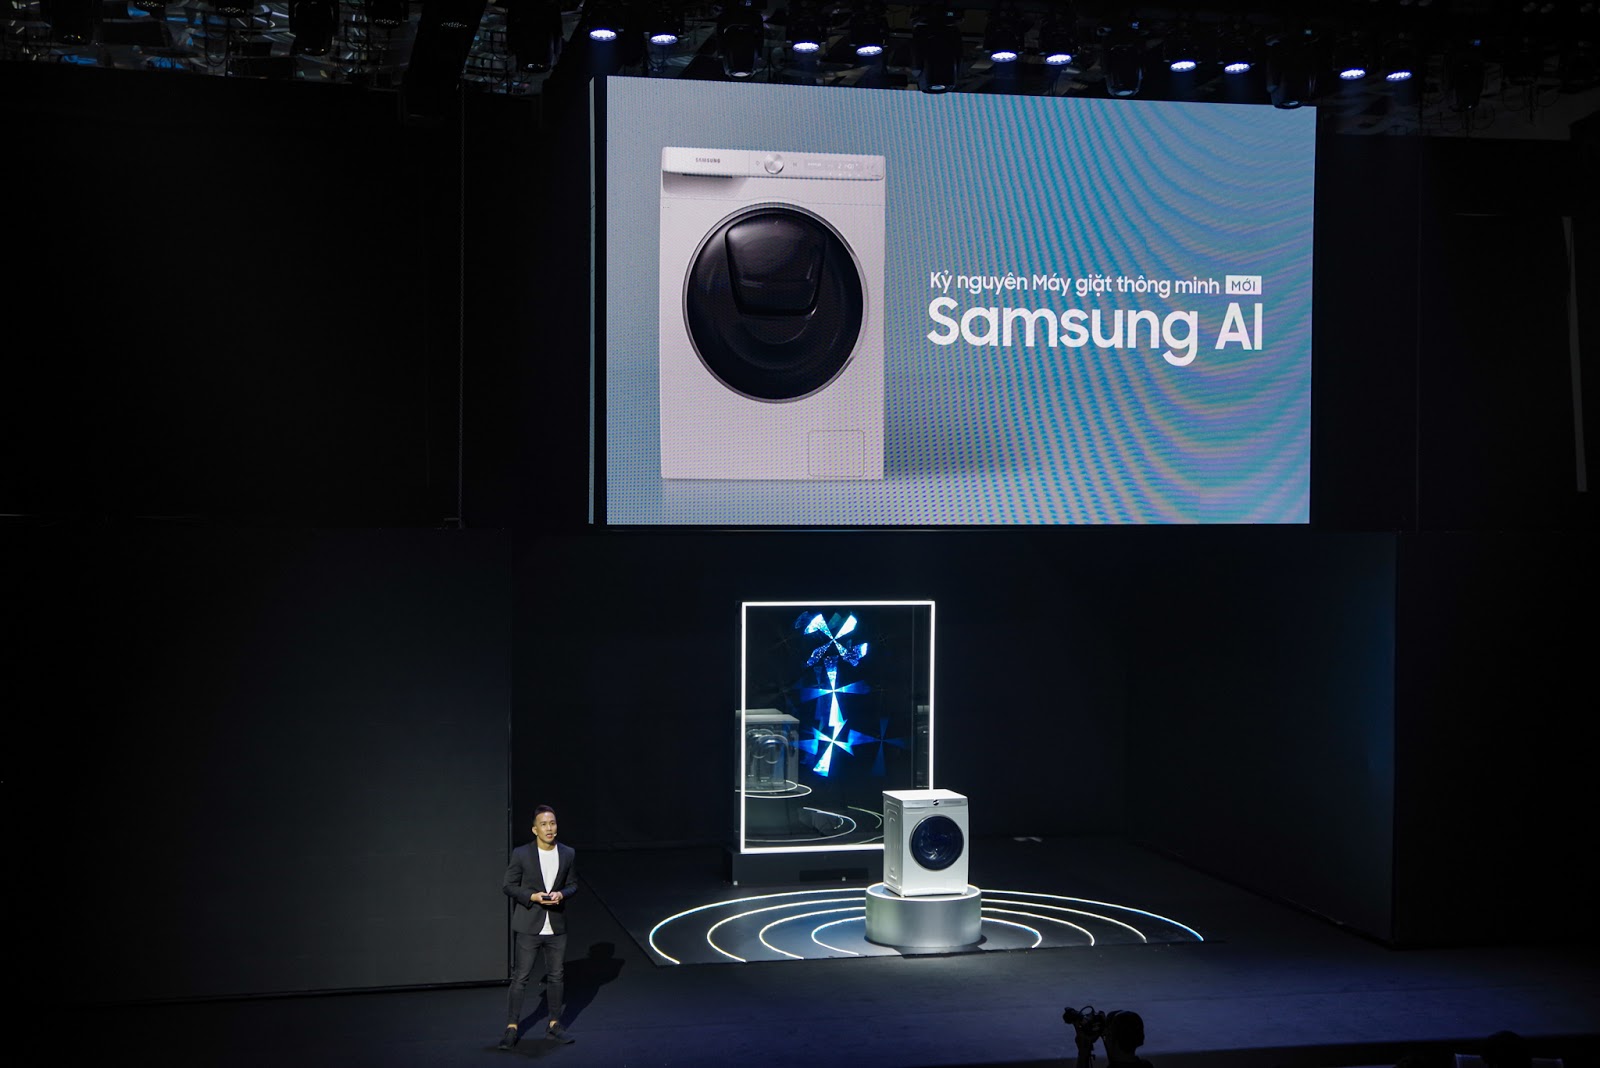 Samsung trình làng máy giặt thế hệ mới sử dụng AI